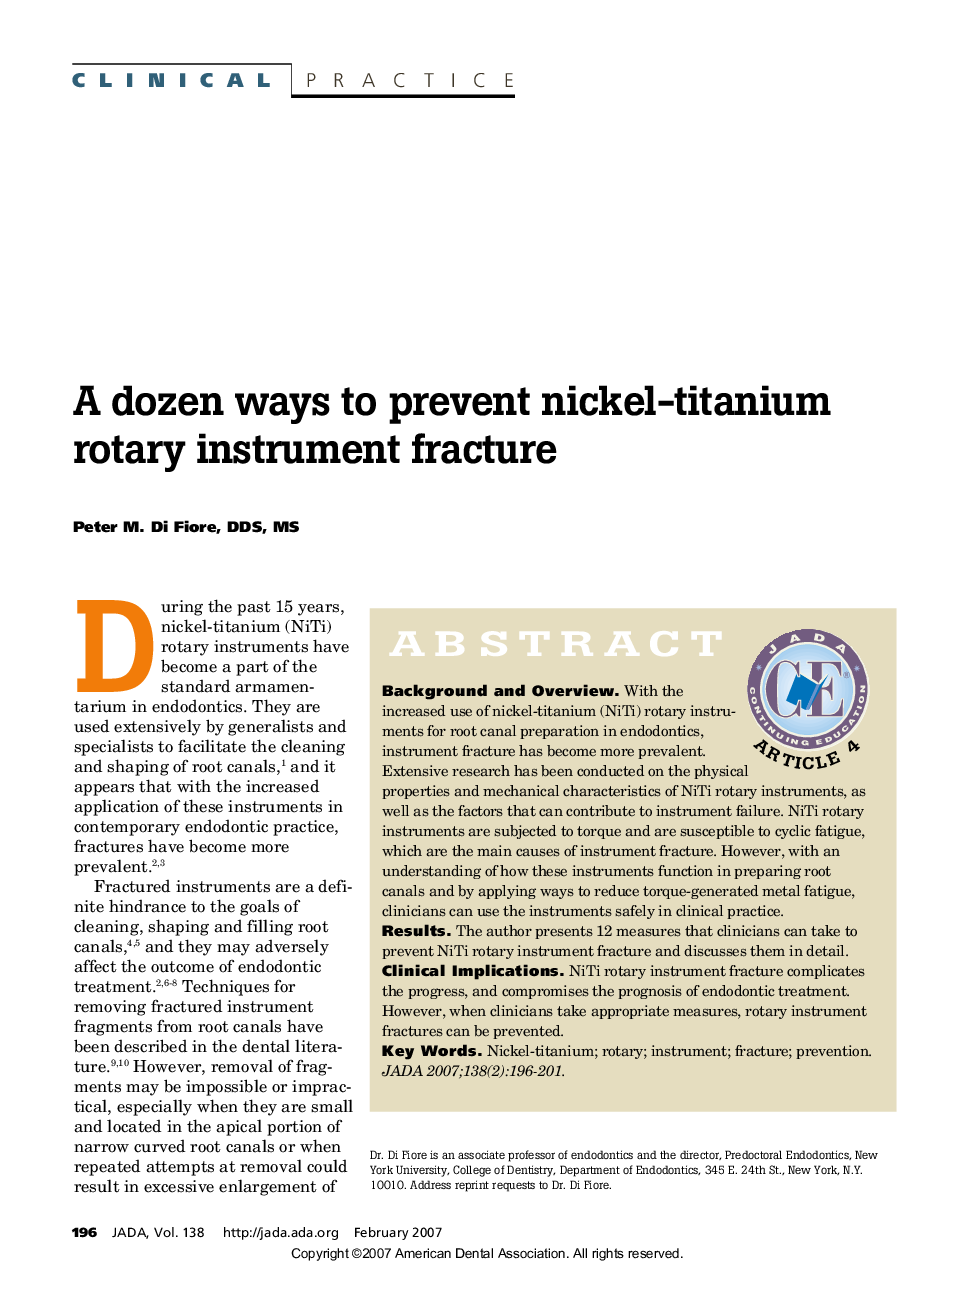 A dozen ways to prevent nickel-titanium rotary instrument fracture